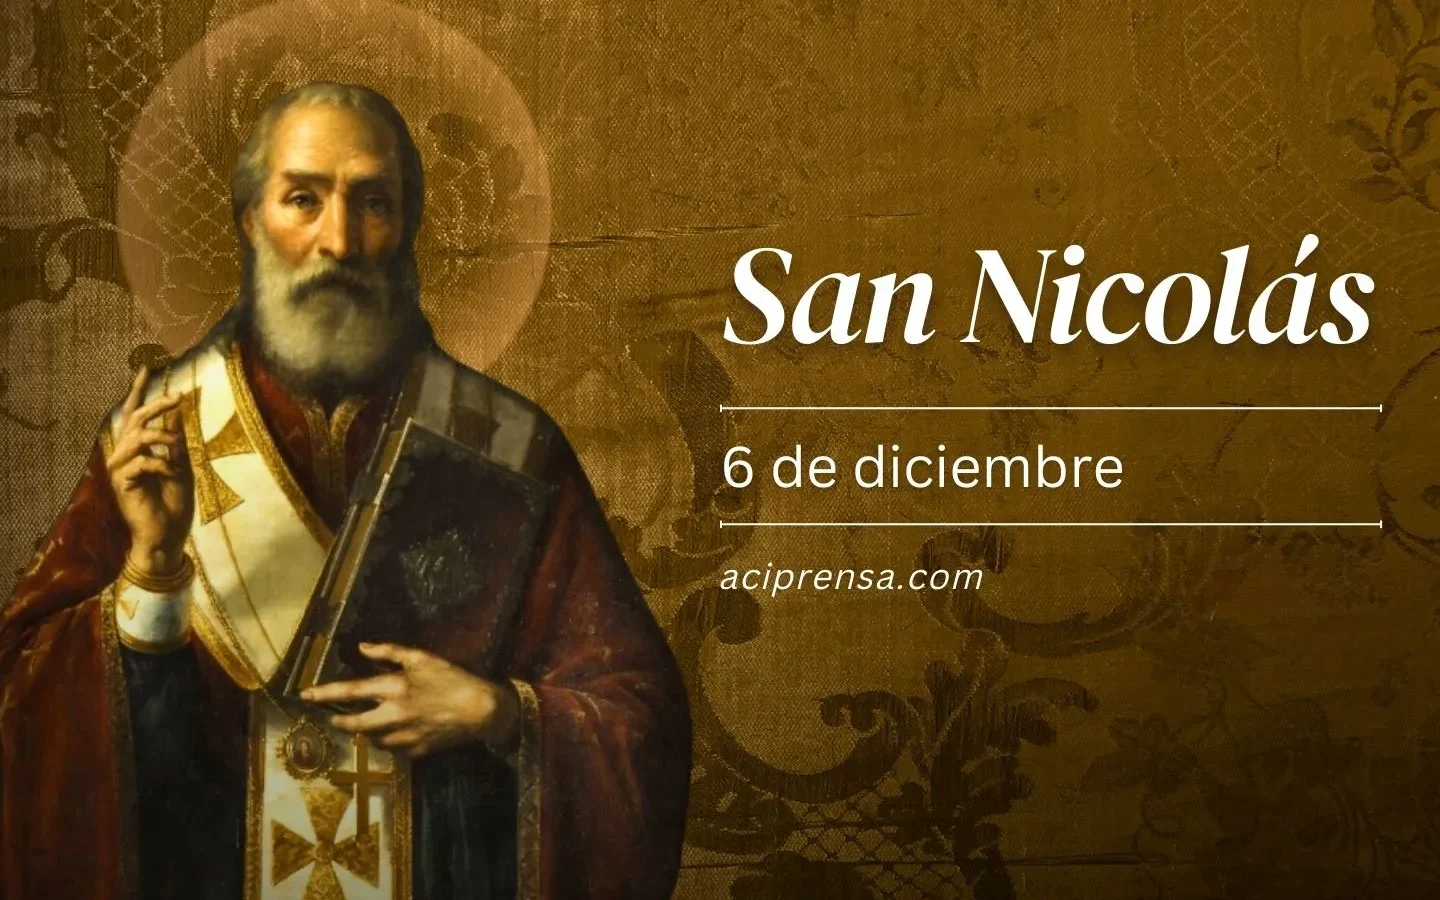 San Nicolás de Bari: El Patrono de los Niños y los Marineros